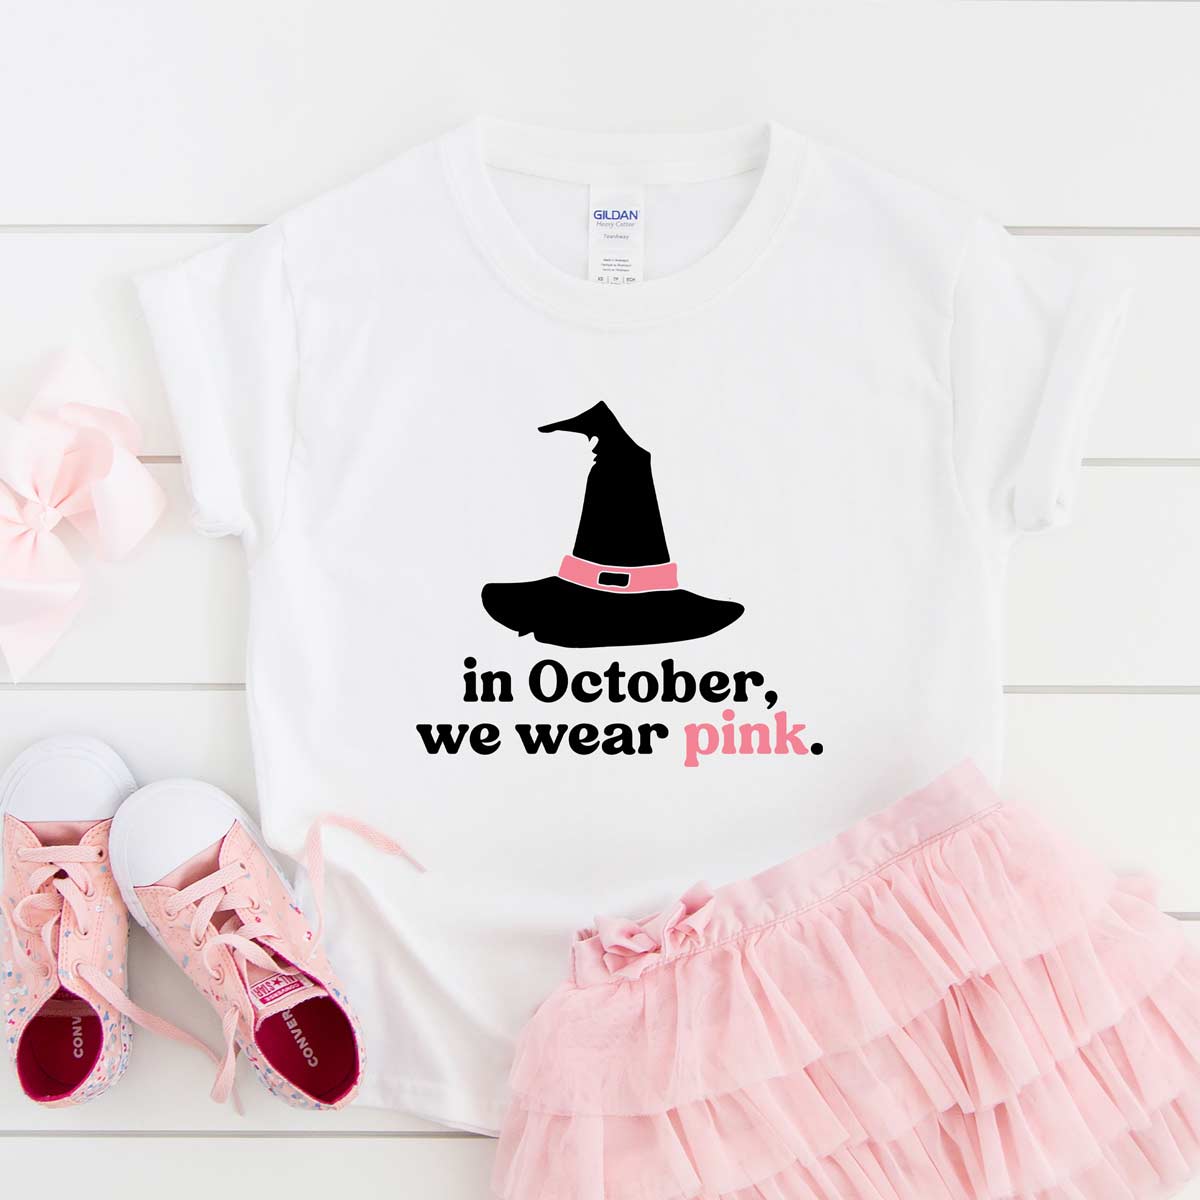 In October We Wear Pink SVG Cut File